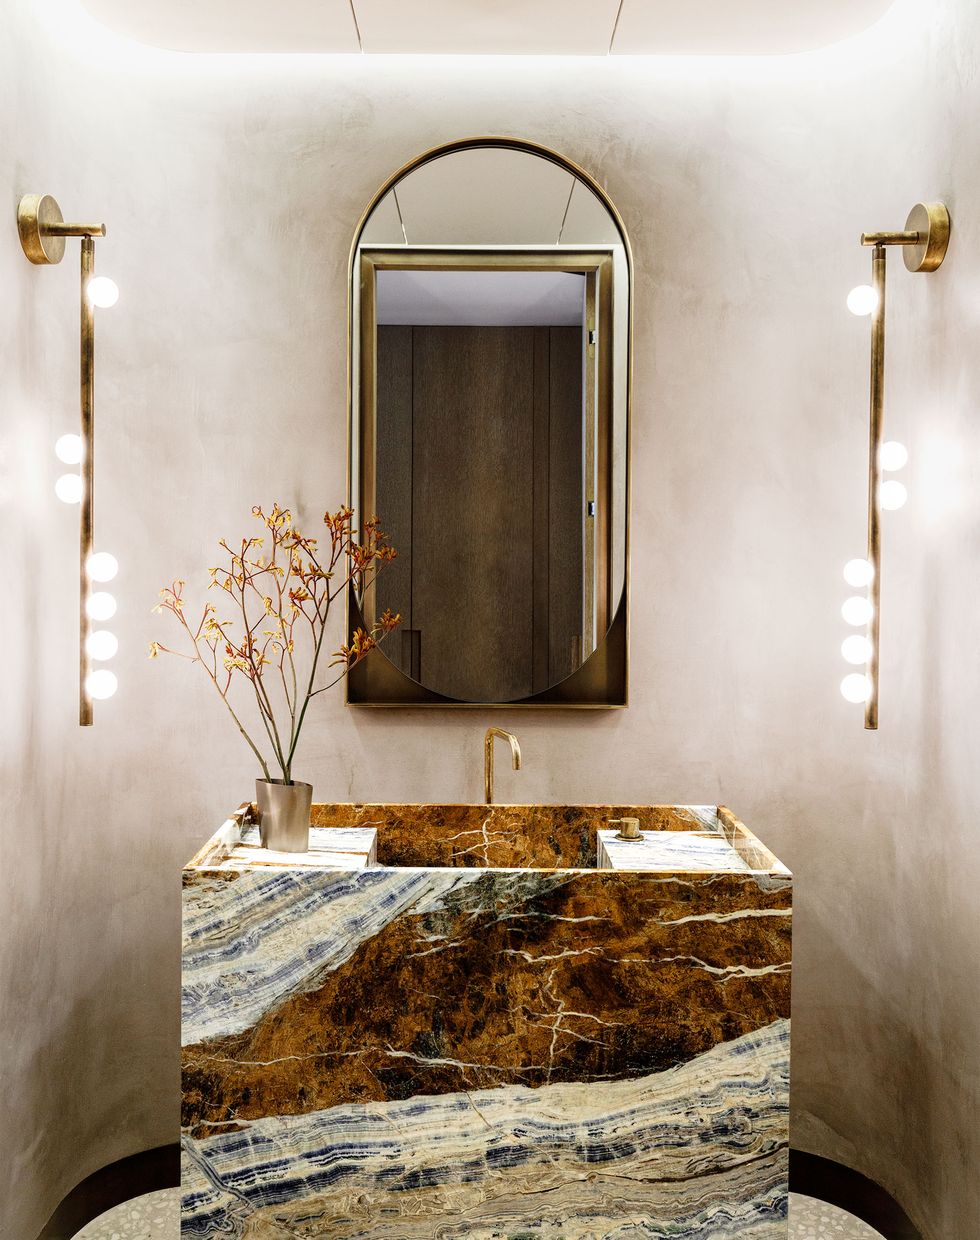 Thiết kế nội thất của phòng tắm này khiến người ta phải trầm trồ bởi sự nổi bật của hệ thống đèn treo tường độc lạ, phản chiếu ánh sáng lấp lánh lên chiếc bồn rửa bằng đá cẩm thạch Cassiopeia cùng vòi rửa mạ vàng đồng màu sang chảnh.